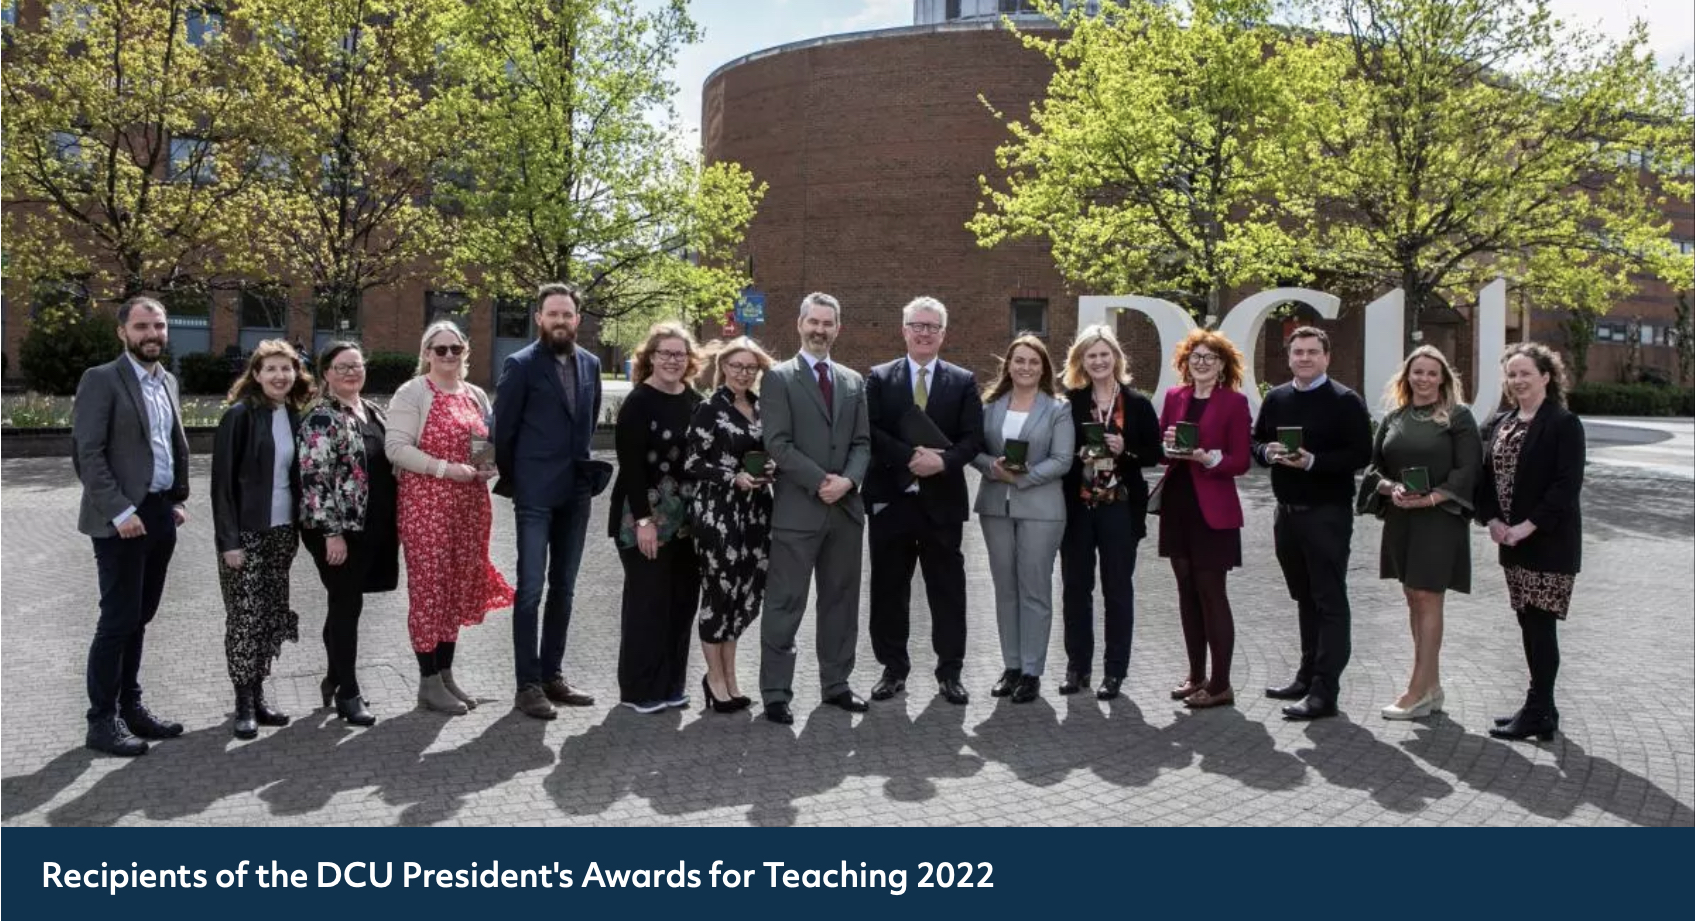 Teaching Awards 2022